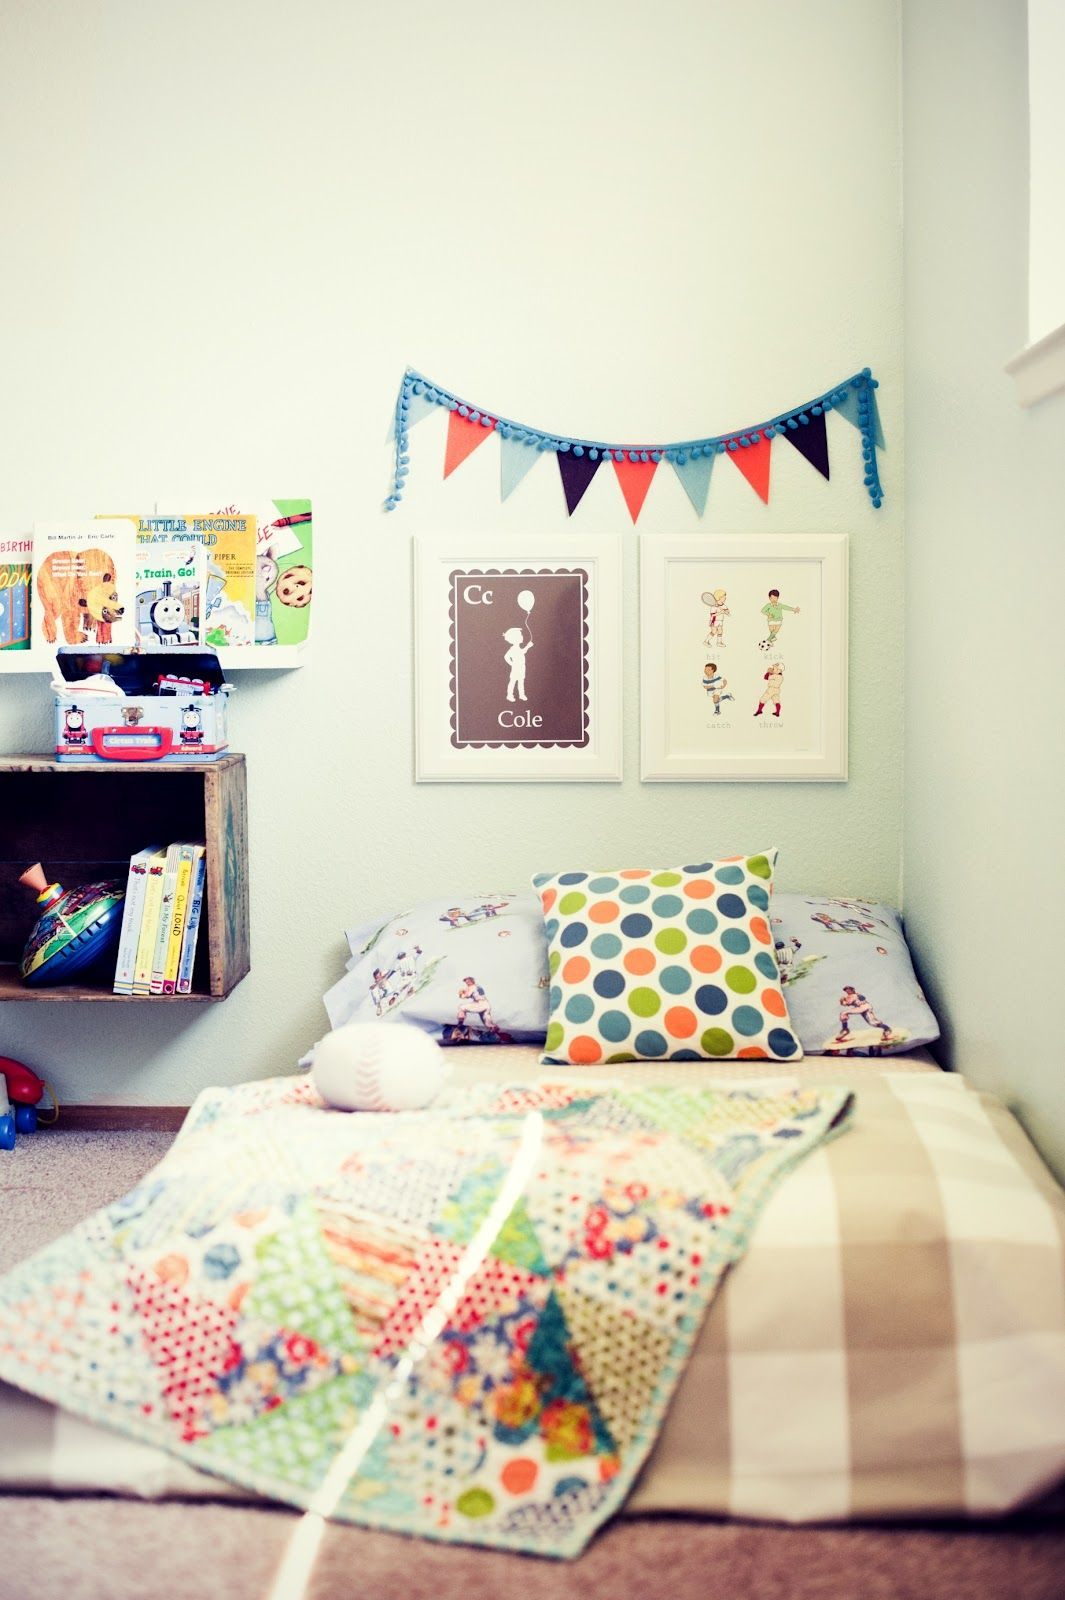 Lit Bebe A Barreau Meilleur De Mattress On the Floor = toddler Bed Montessori Nursery